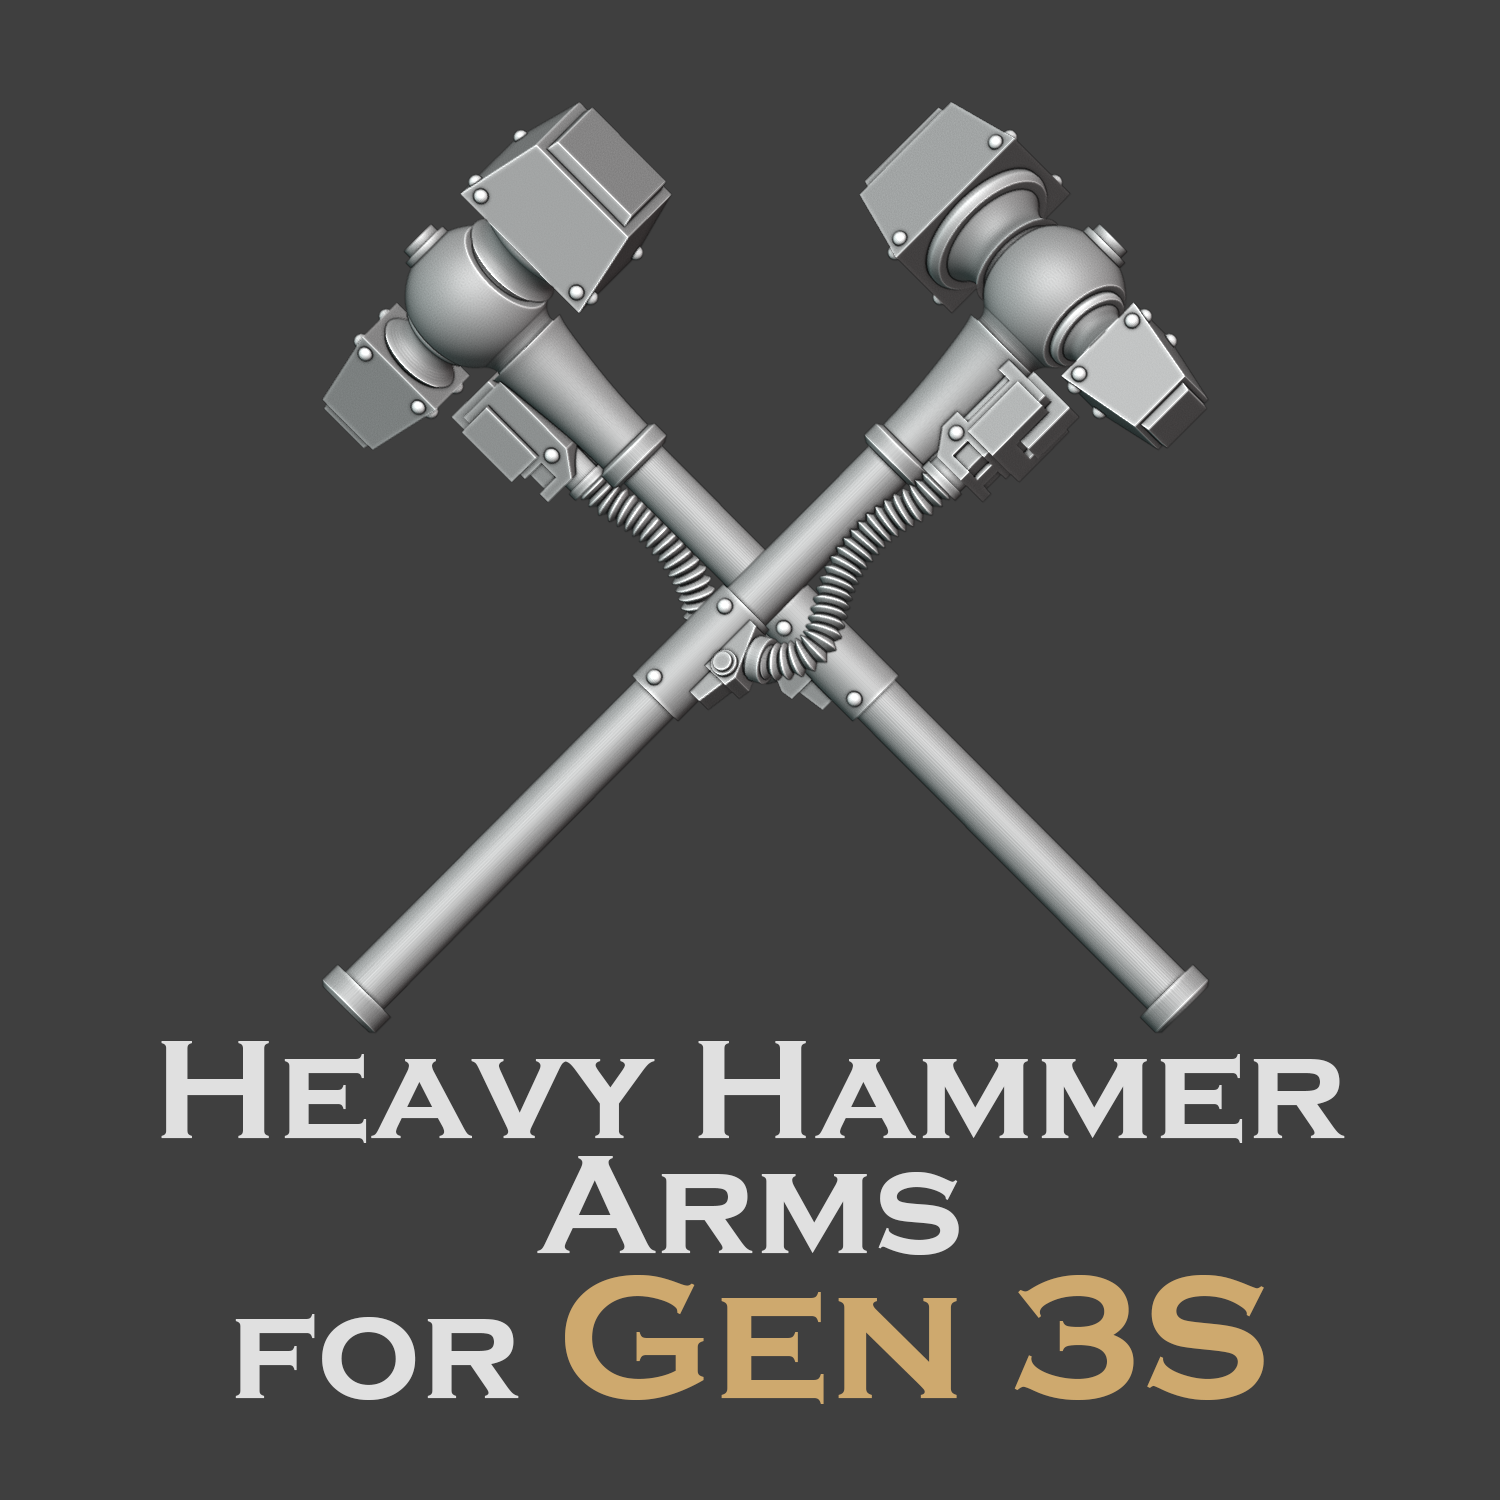 Heresy bits, M3 Thunder Hammers